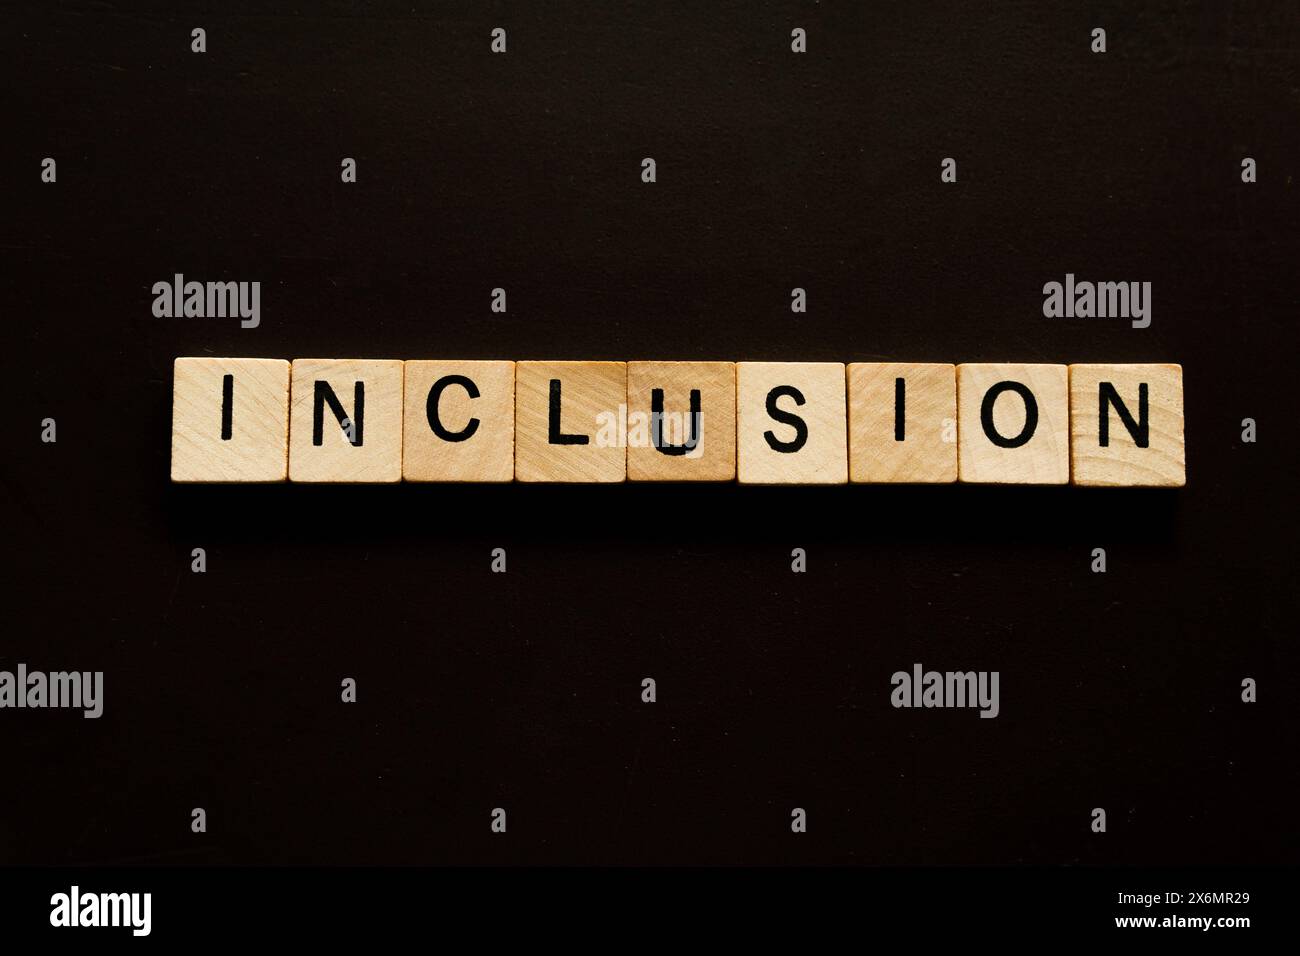 Ein Holzblock mit der Aufschrift " Inclusion ". Stockfoto